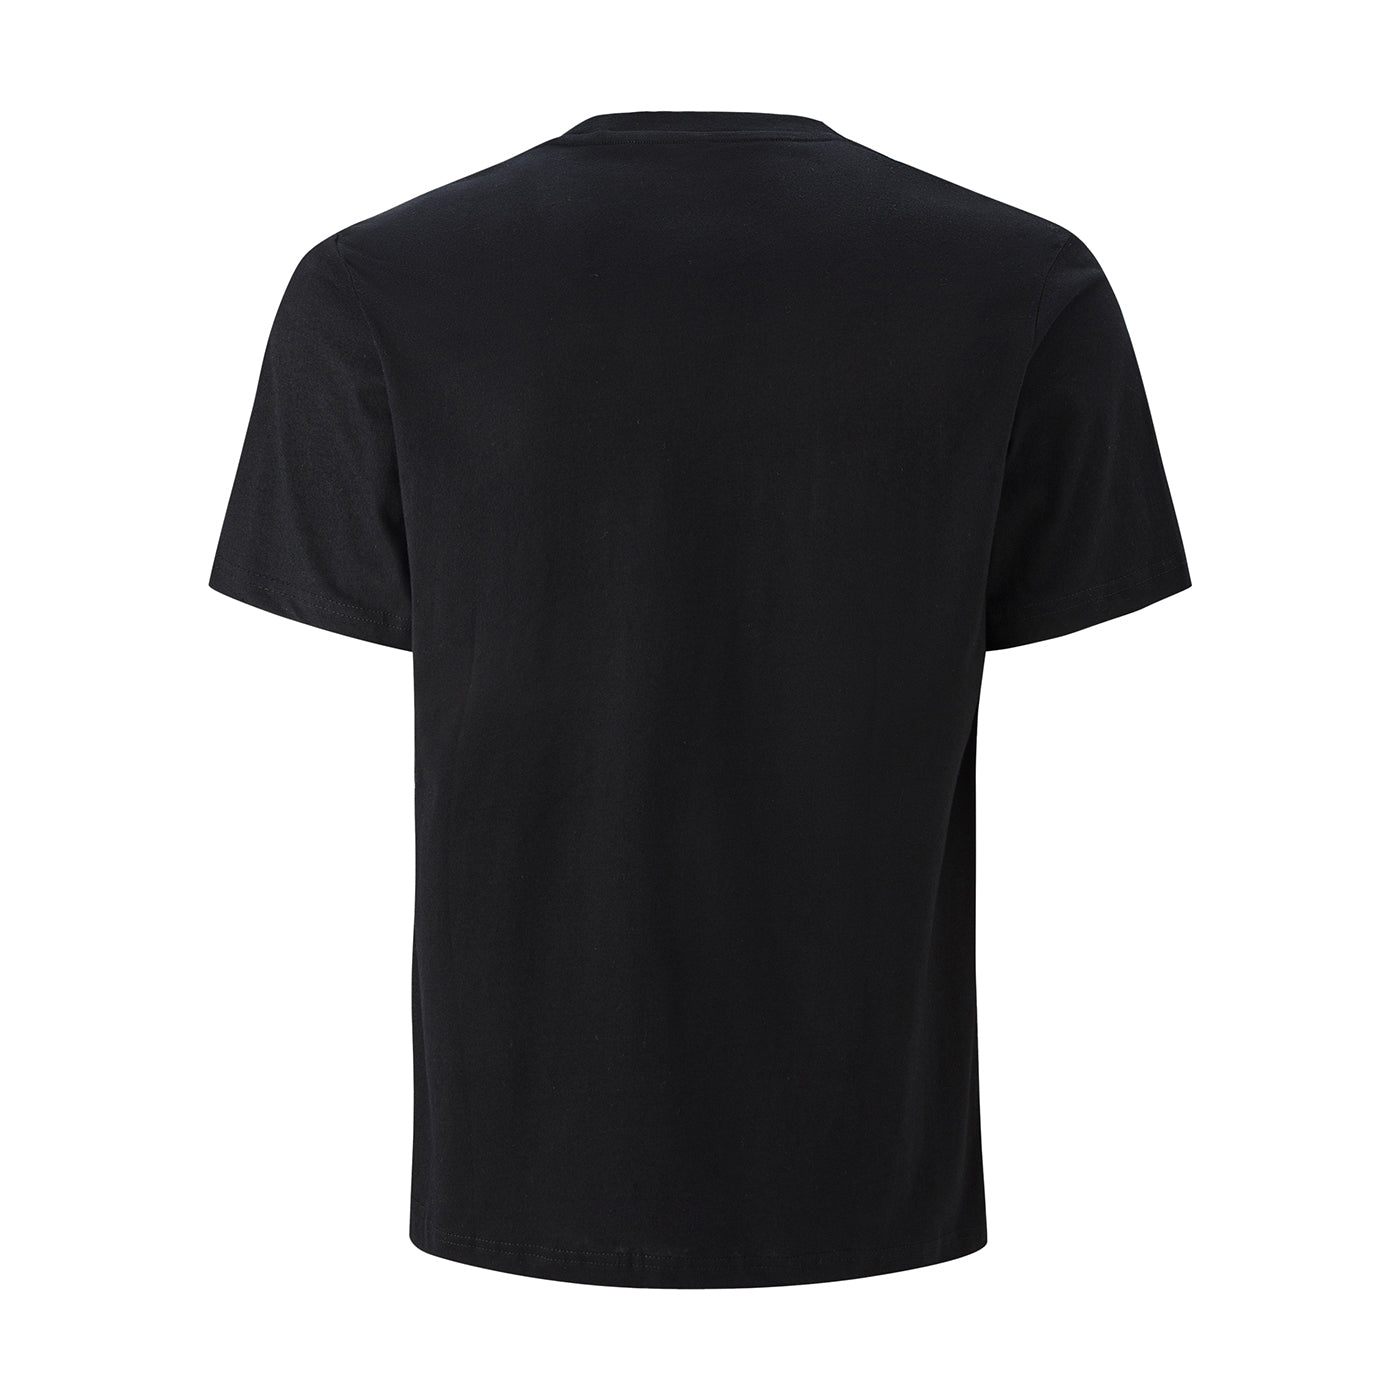 Cubes Black Cotton T-Shirt